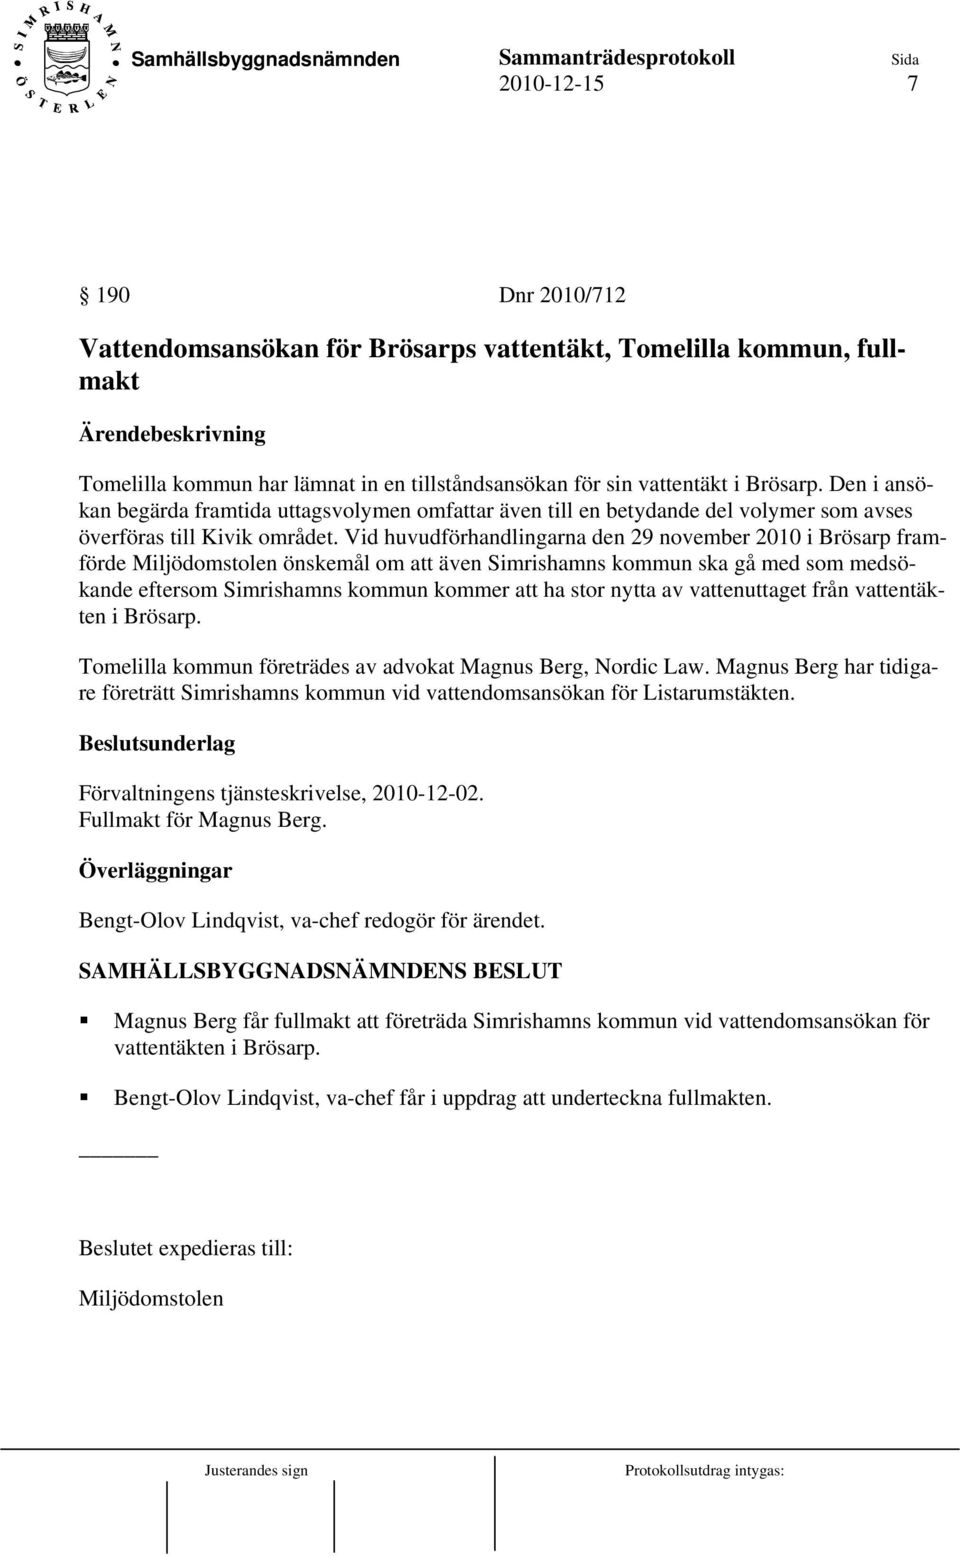 Vid huvudförhandlingarna den 29 november 2010 i Brösarp framförde Miljödomstolen önskemål om att även Simrishamns kommun ska gå med som medsökande eftersom Simrishamns kommun kommer att ha stor nytta